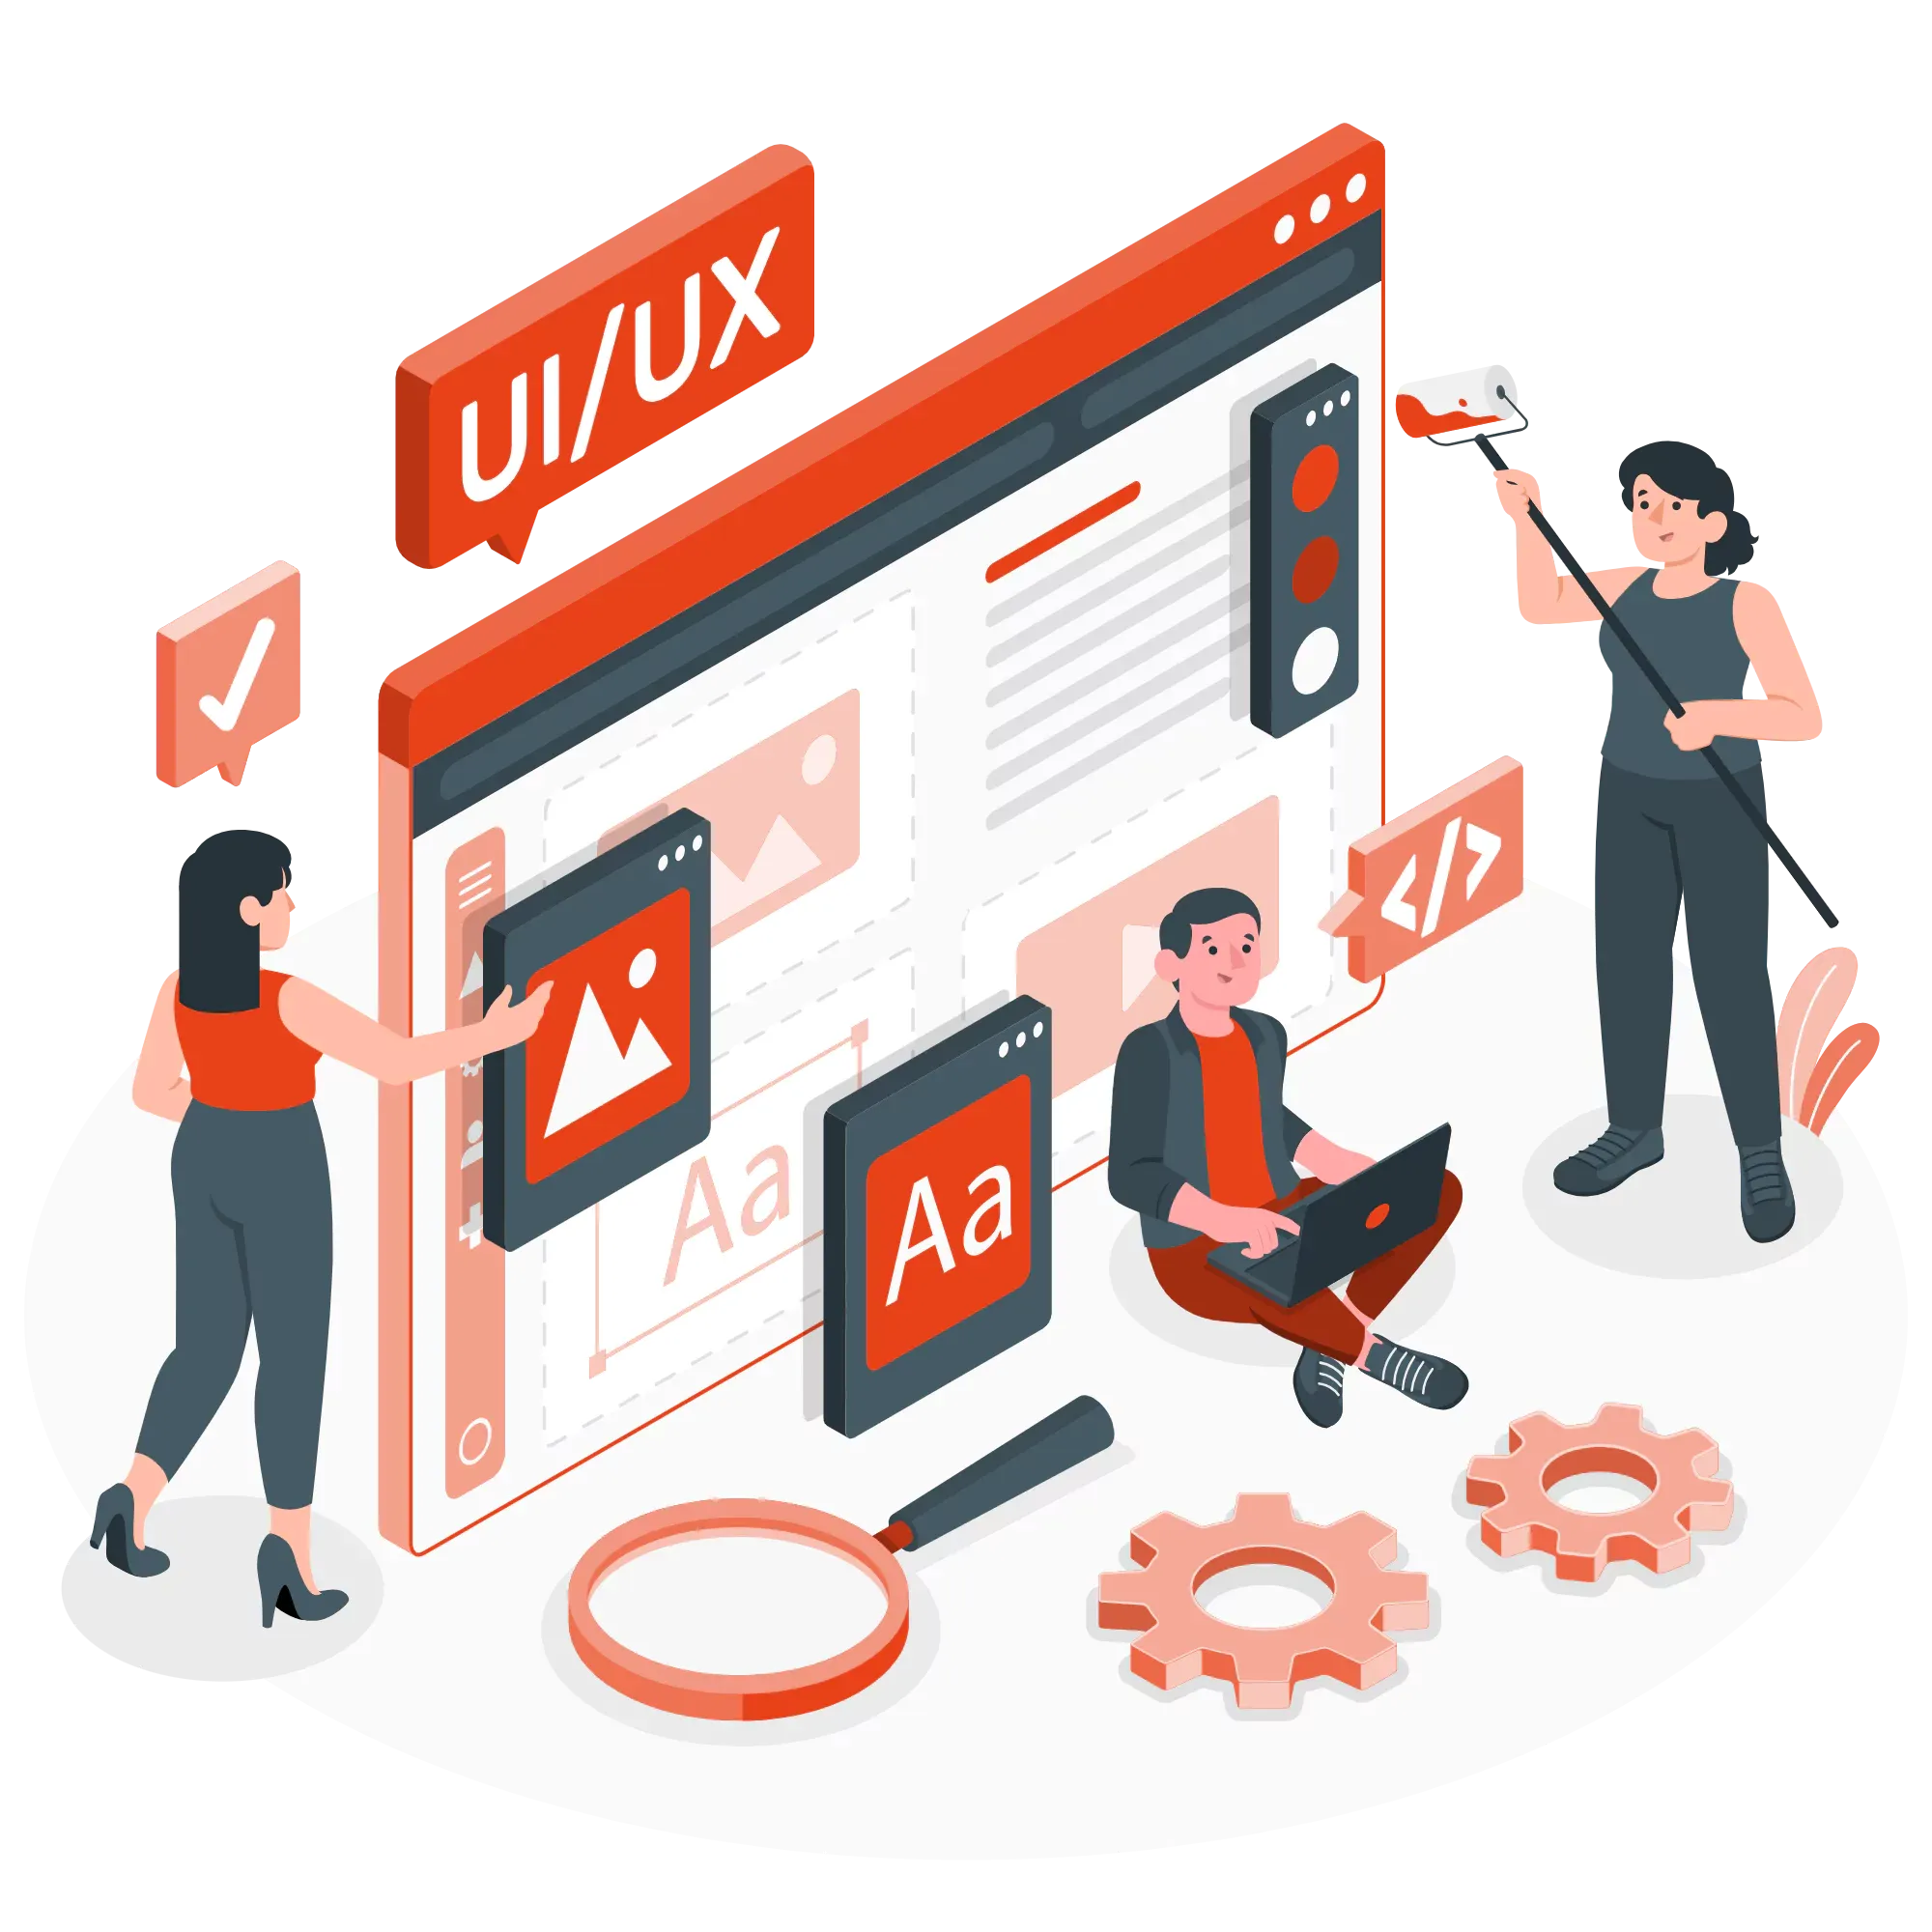 ui-ux-ios-app-design.webp